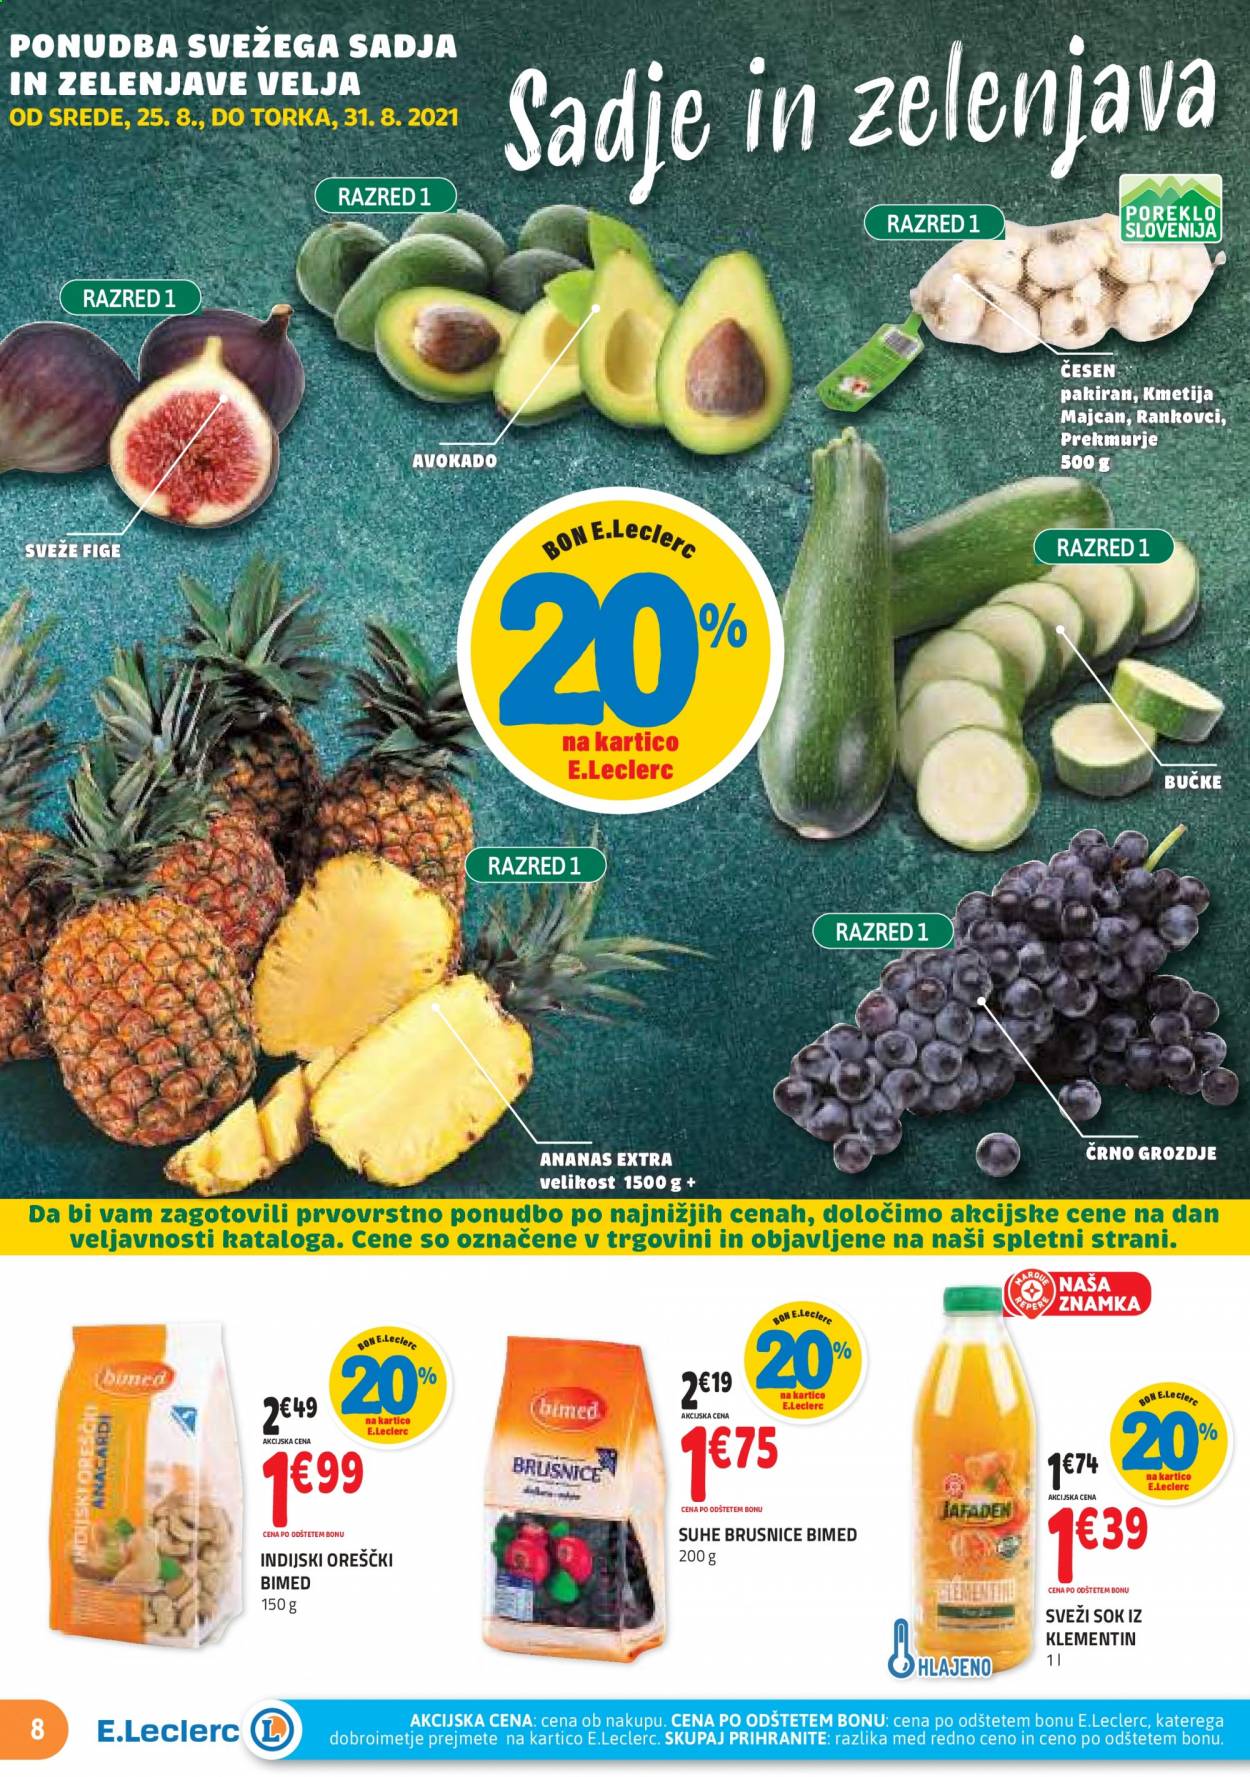 thumbnail - E.Leclerc katalog - 25.8.2021 - 4.9.2021 - Ponudba izdelkov - sok, fige, grozdje, avokado, bučke. Stran 8.